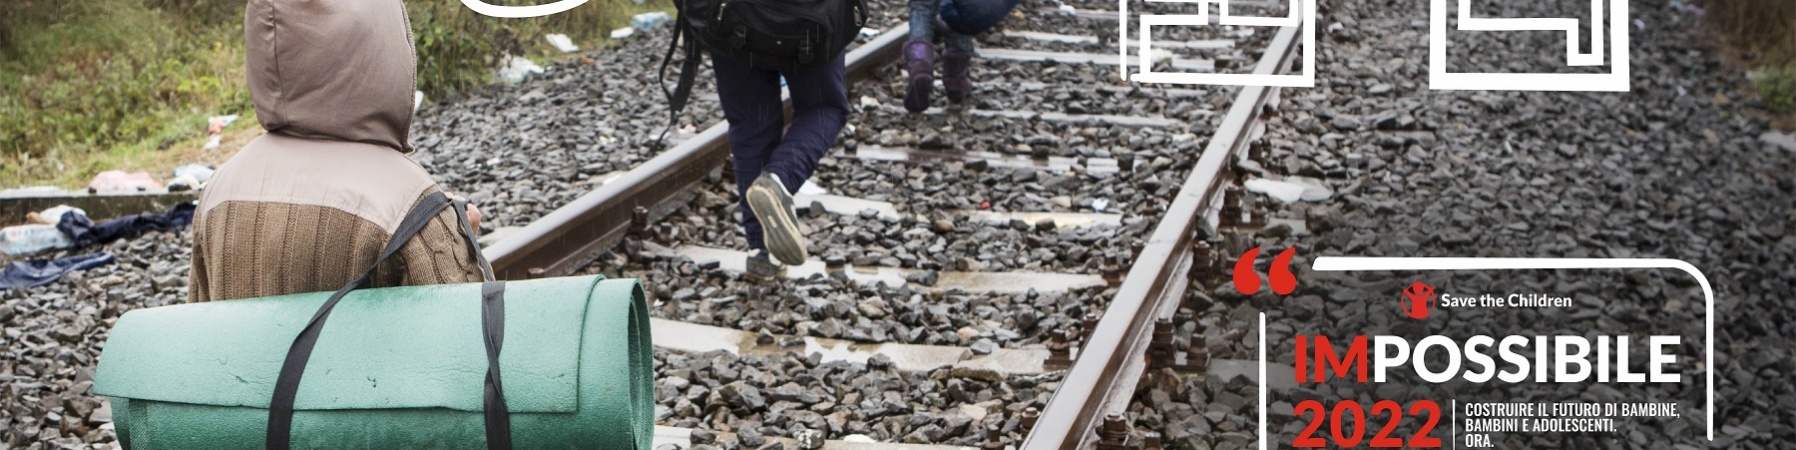 bambini in fuga che camminano sulle rotaie del treno con zaini in spalla